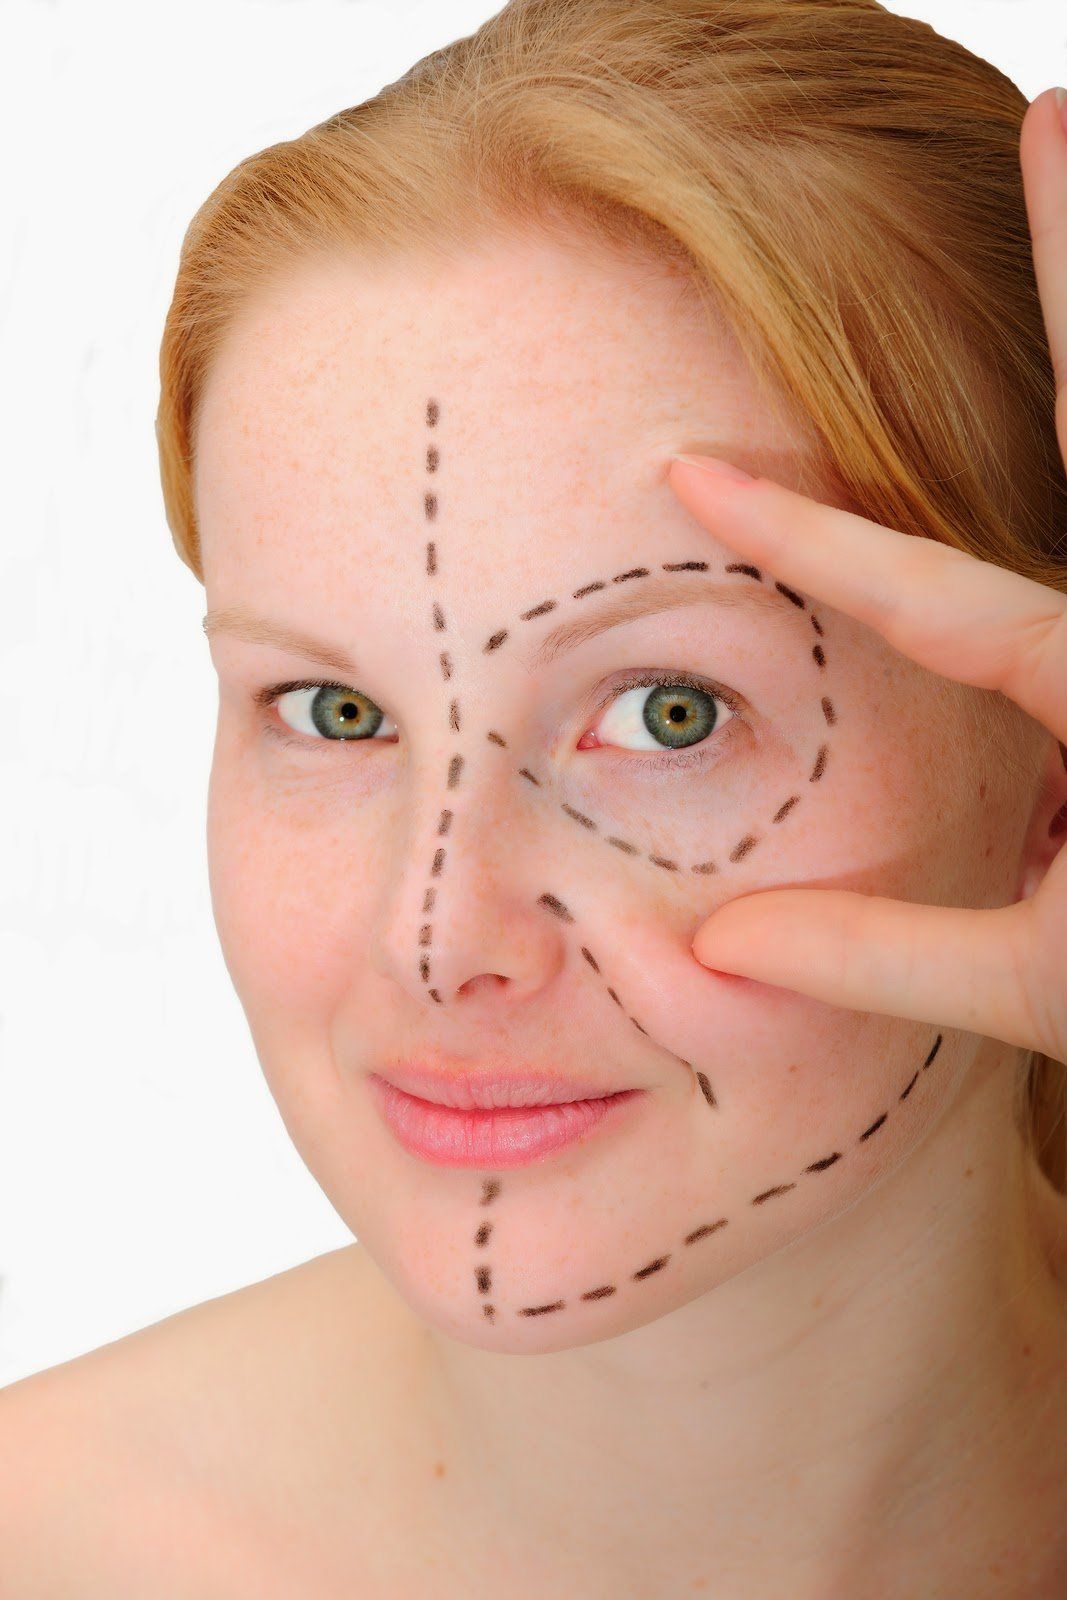 Blogspotcom facial plastic site surgery